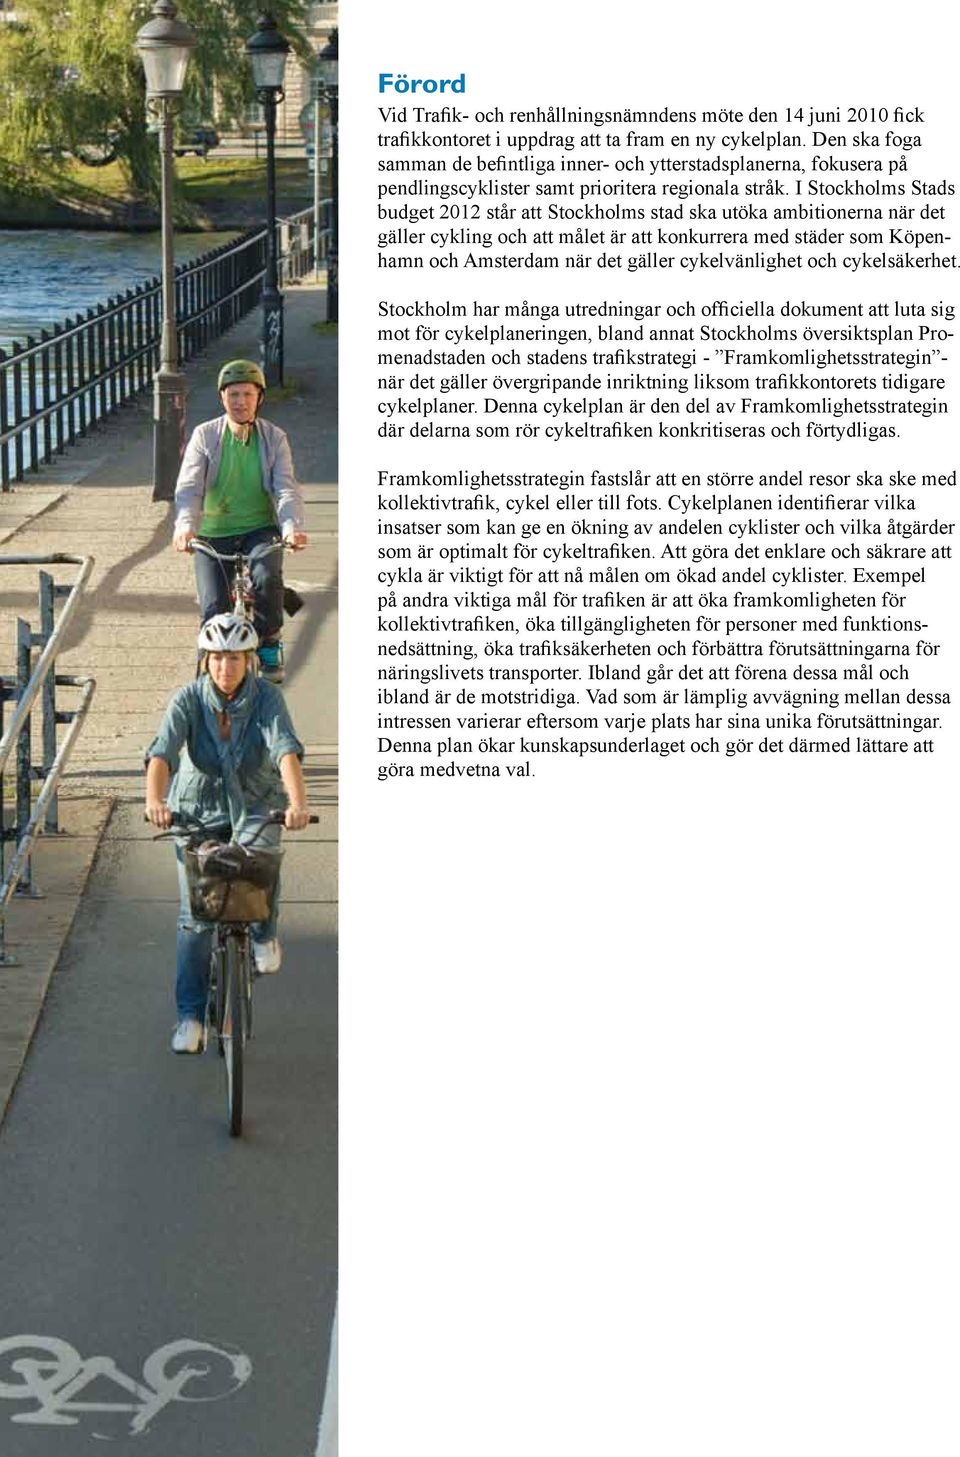 I Stockholms Stads budget 2012 står att Stockholms stad ska utöka ambitionerna när det gäller cykling och att målet är att konkurrera med städer som Köpenhamn och Amsterdam när det gäller